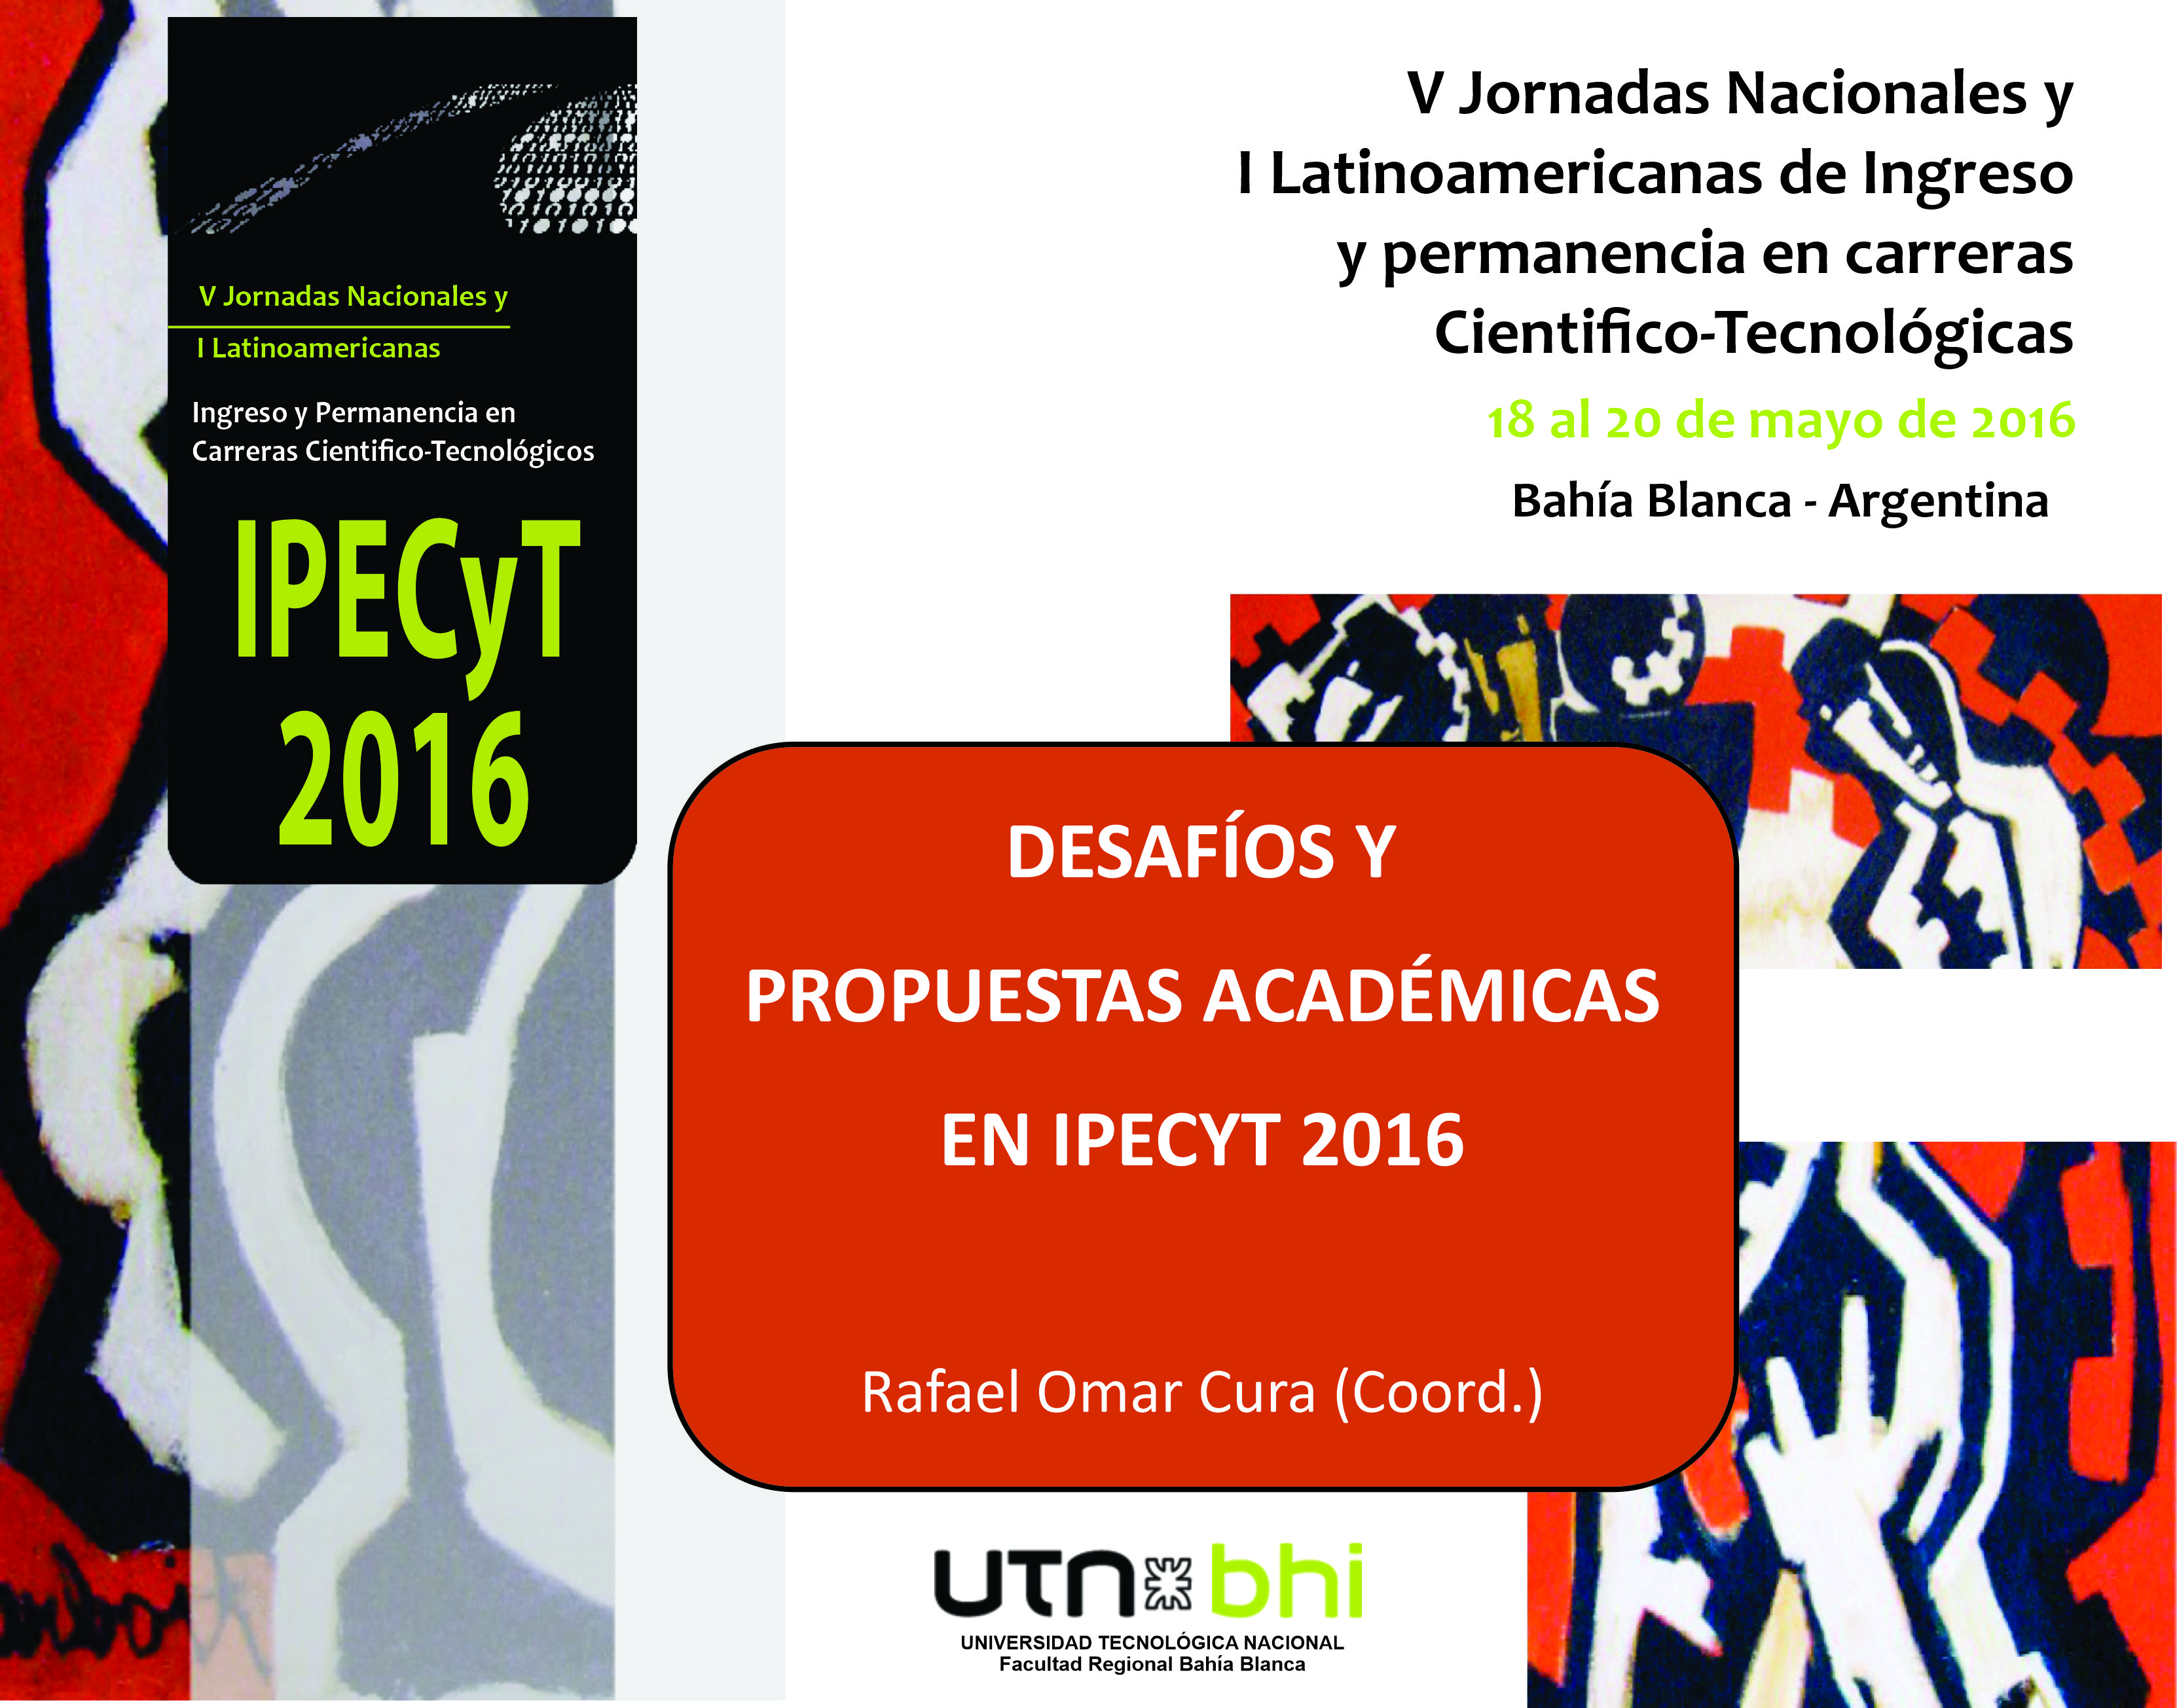 Desafíos y propuestas académicas en IPECYT 2016